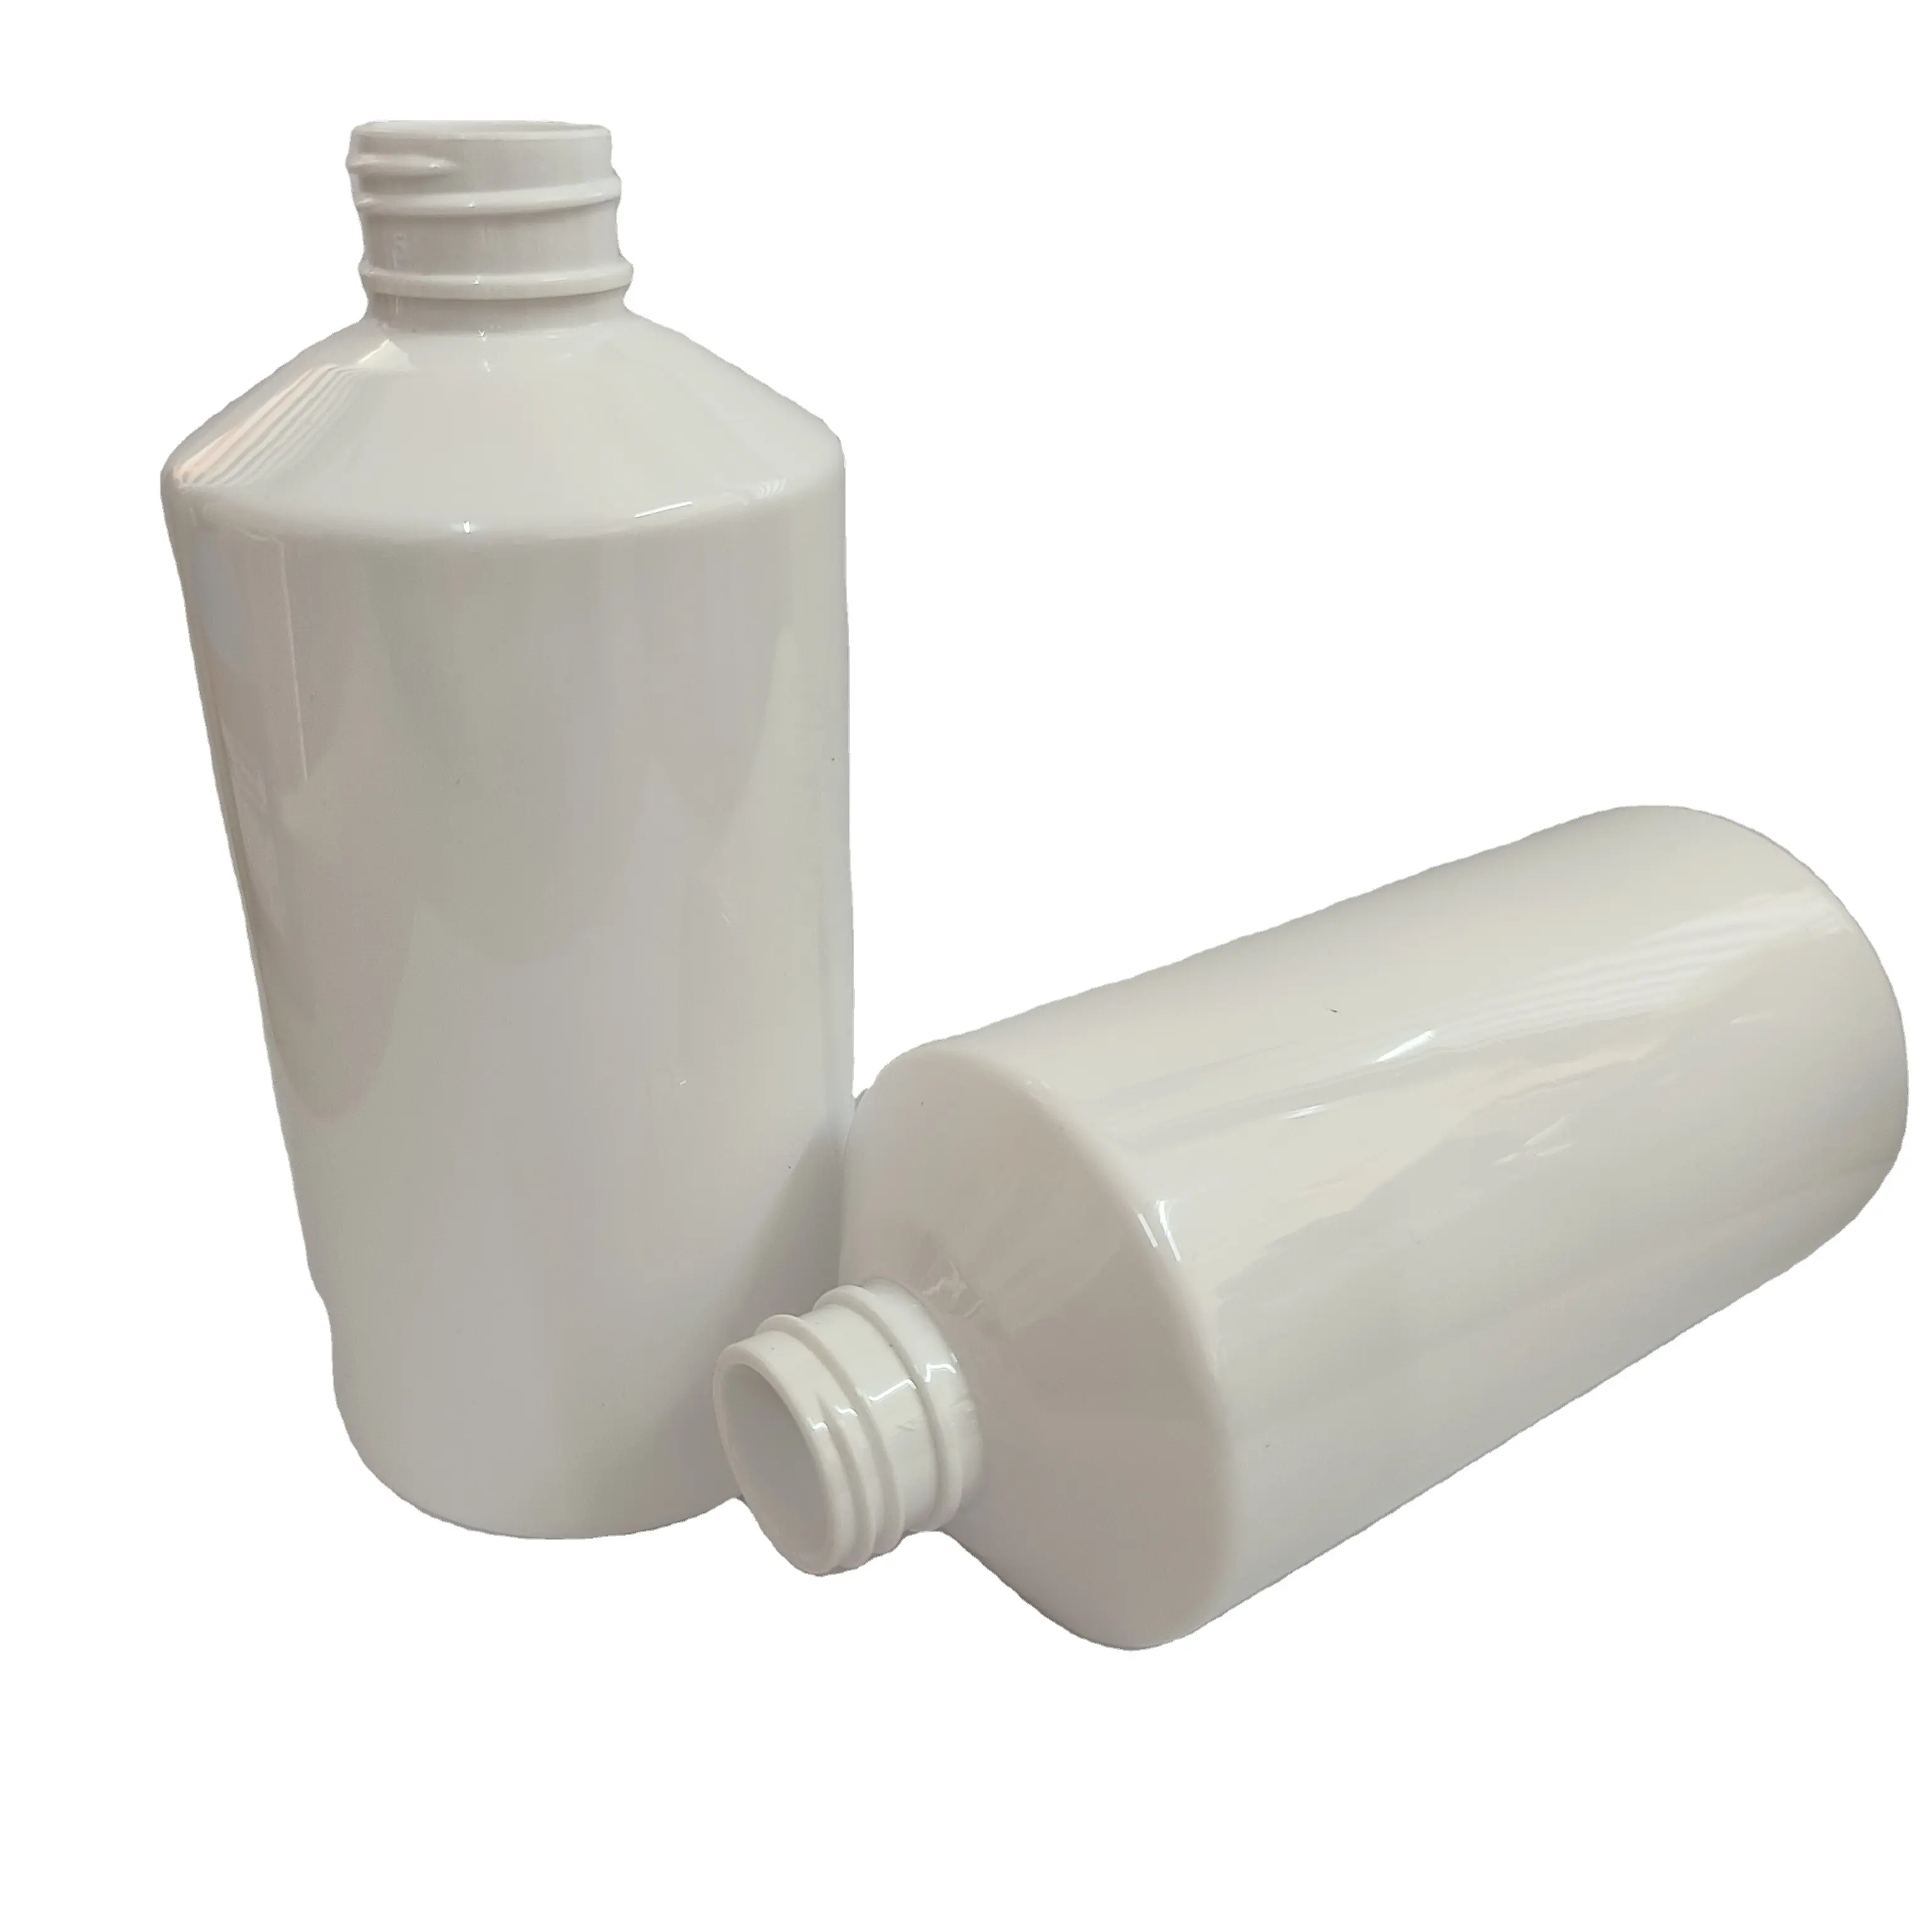 زجاجة الكتف المائل البيضاء من بلاستيك بي اي تي 300 مل للبيع بالجملة زجاجة شامبو PP شفافة لوشن ومطهر يد للعناية بالبشرة والجسم